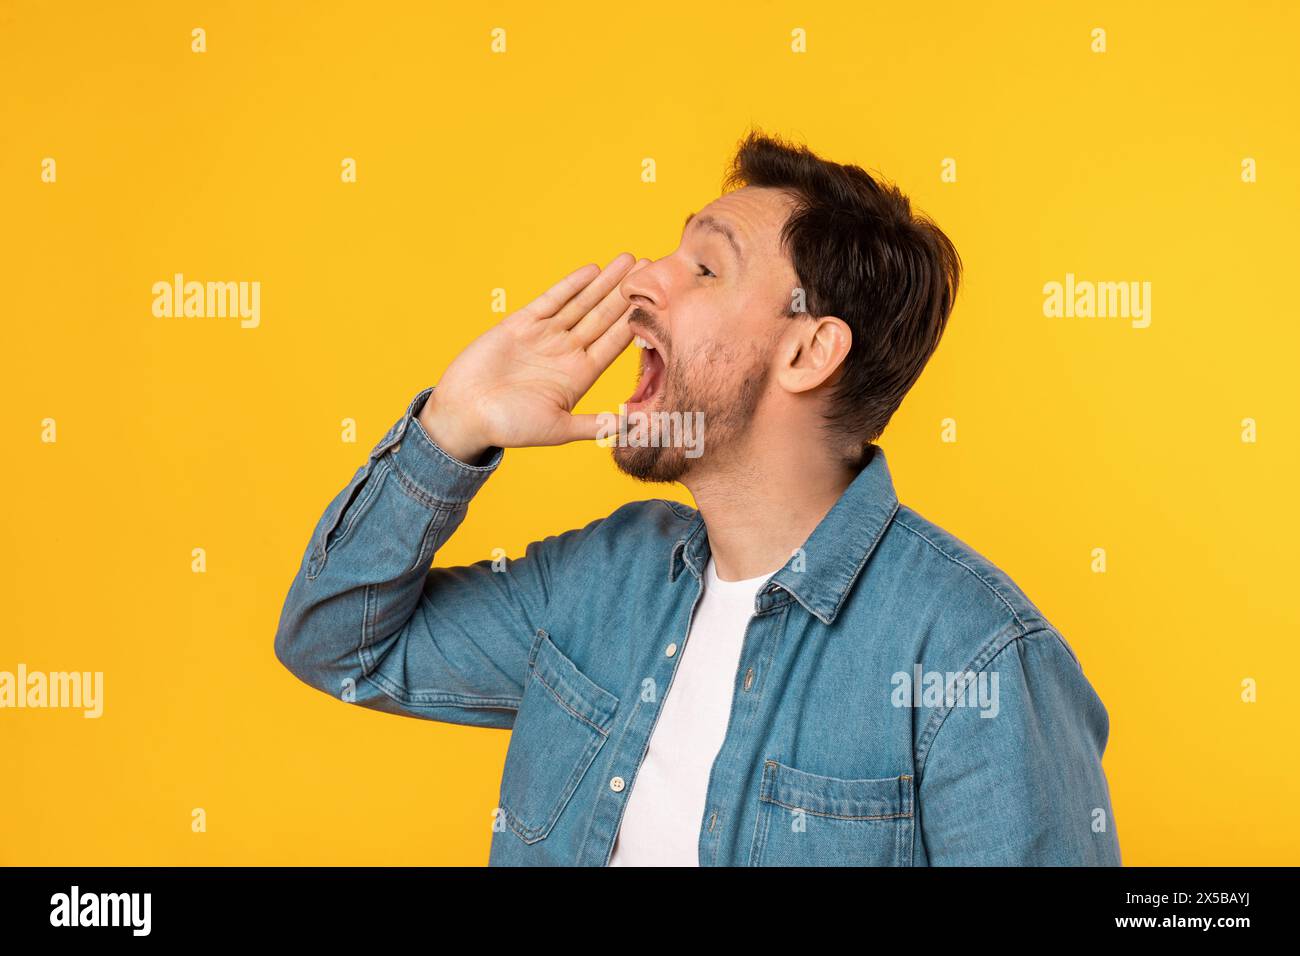 Camicia Young Man in denim che grida annuncio su sfondo giallo Foto Stock